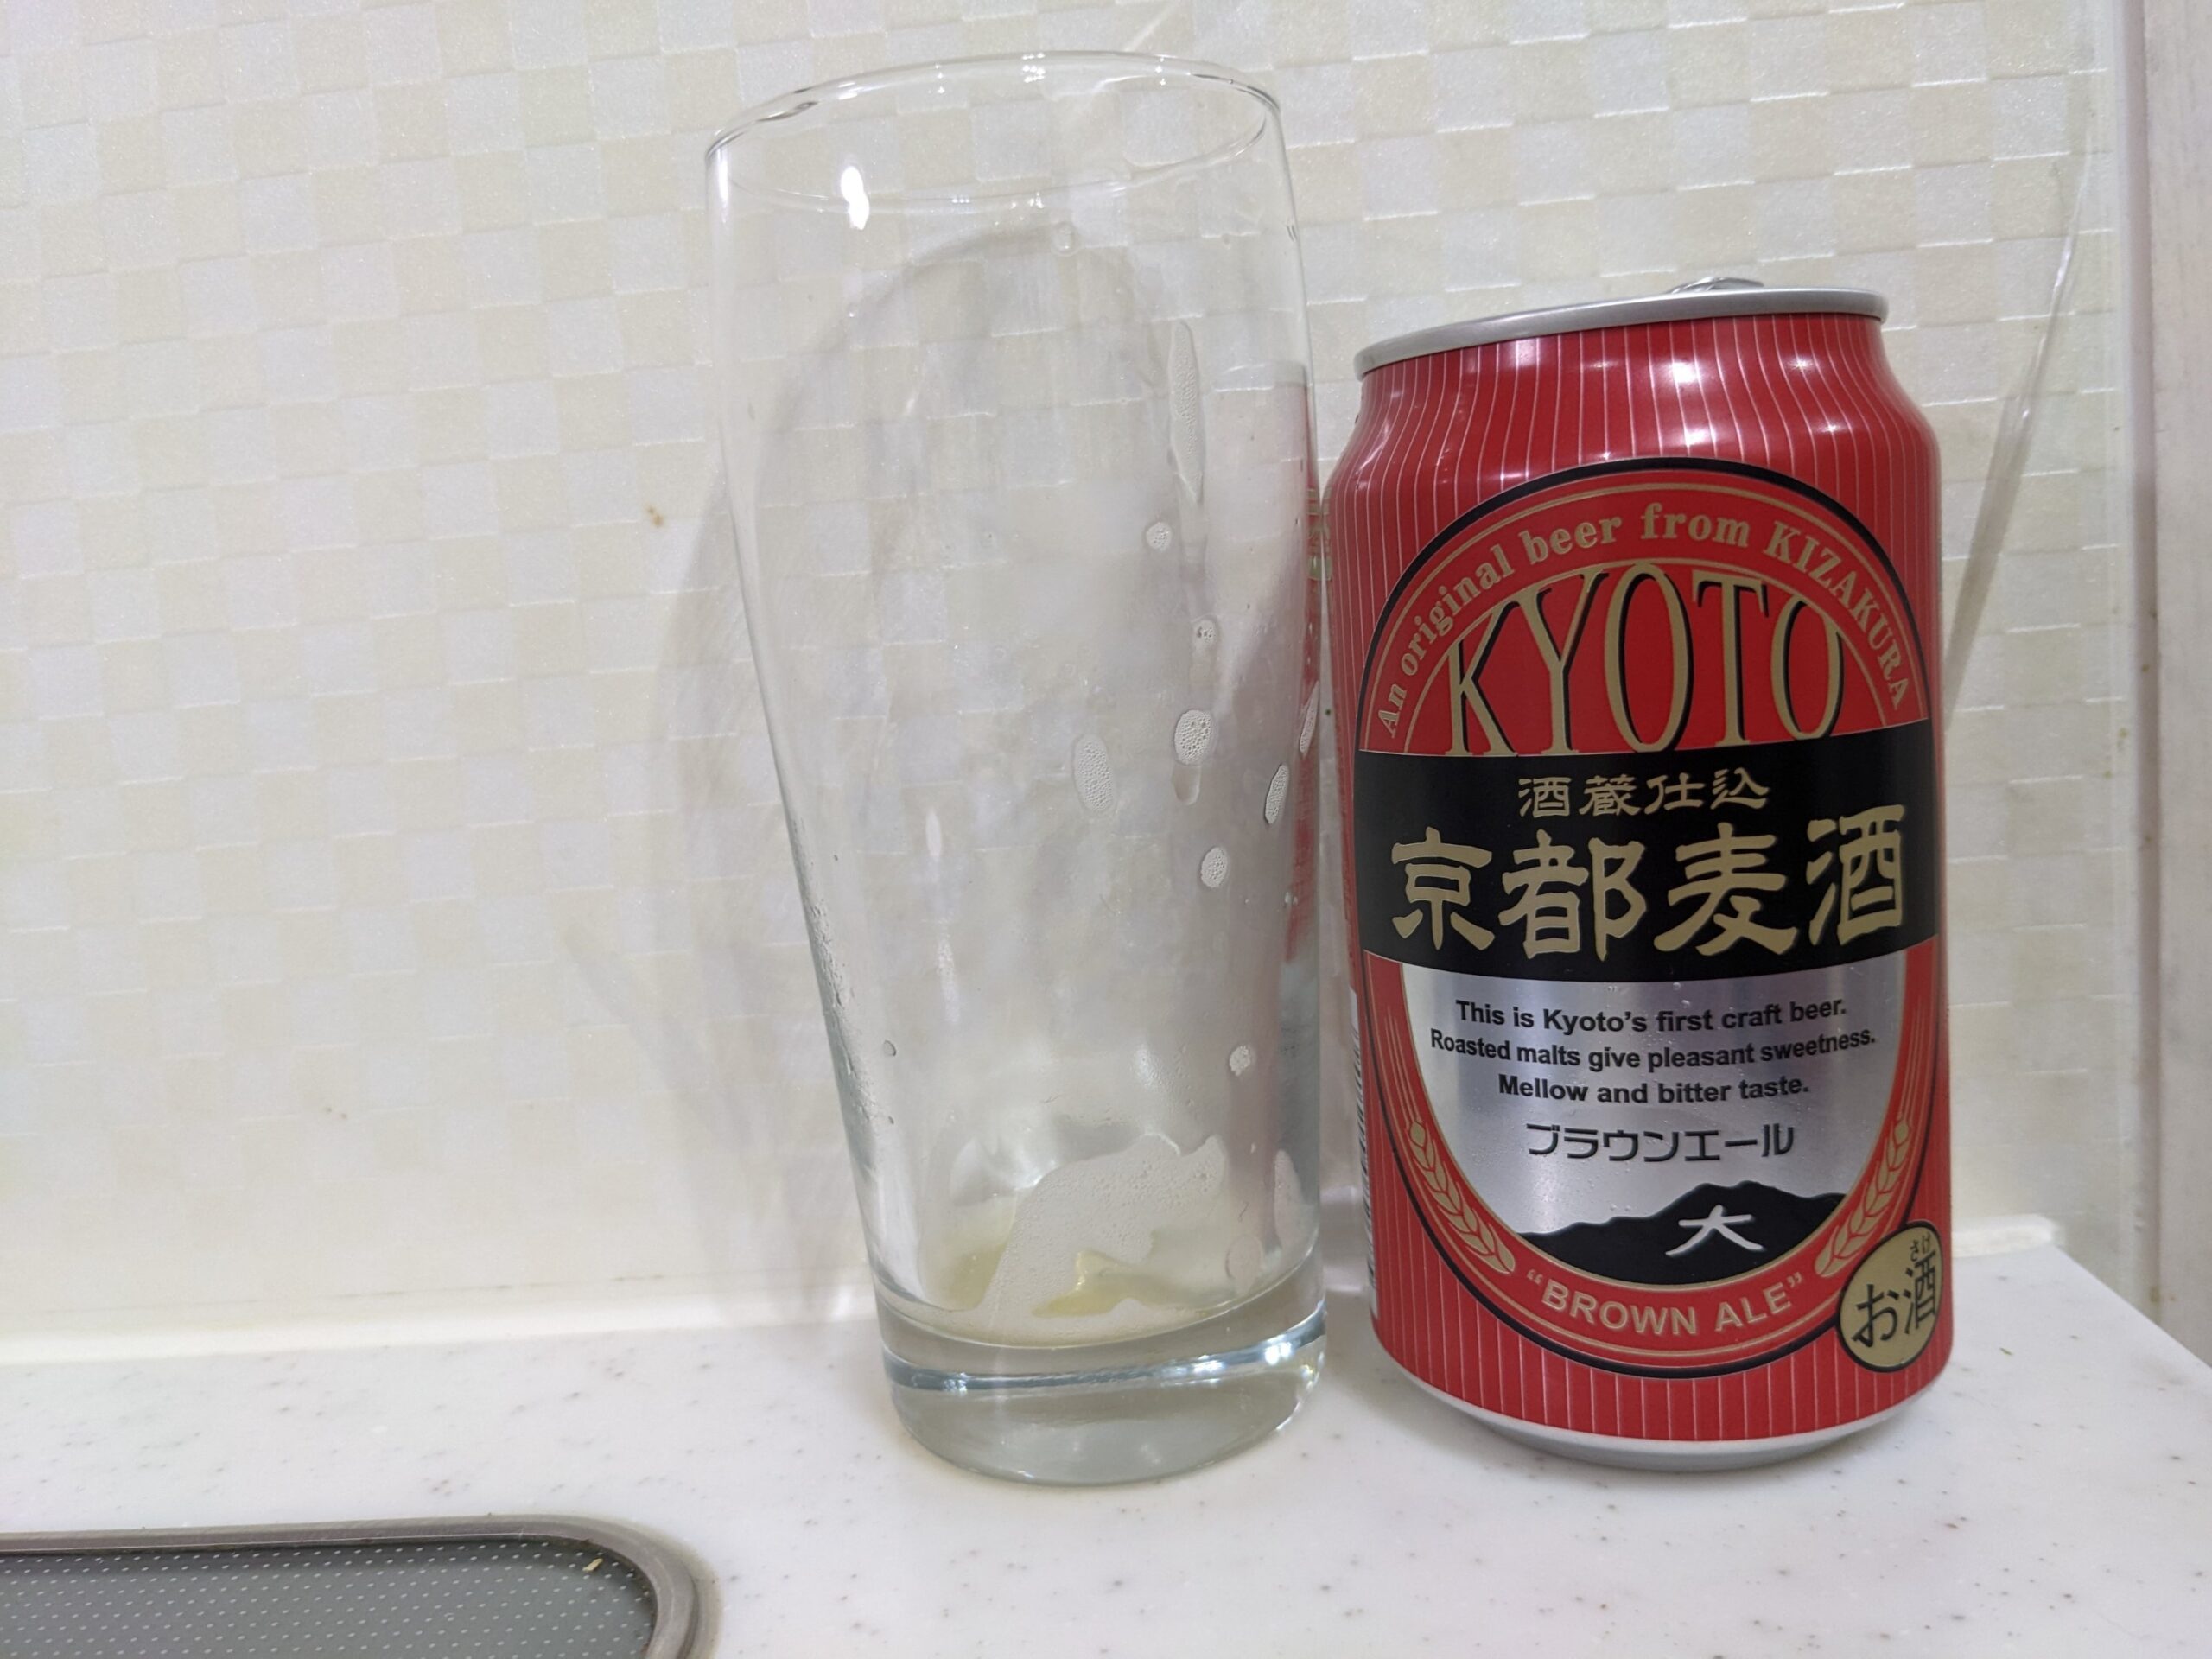 「京都麦酒ブラウンエール 」を飲み終えたグラスとその空き缶